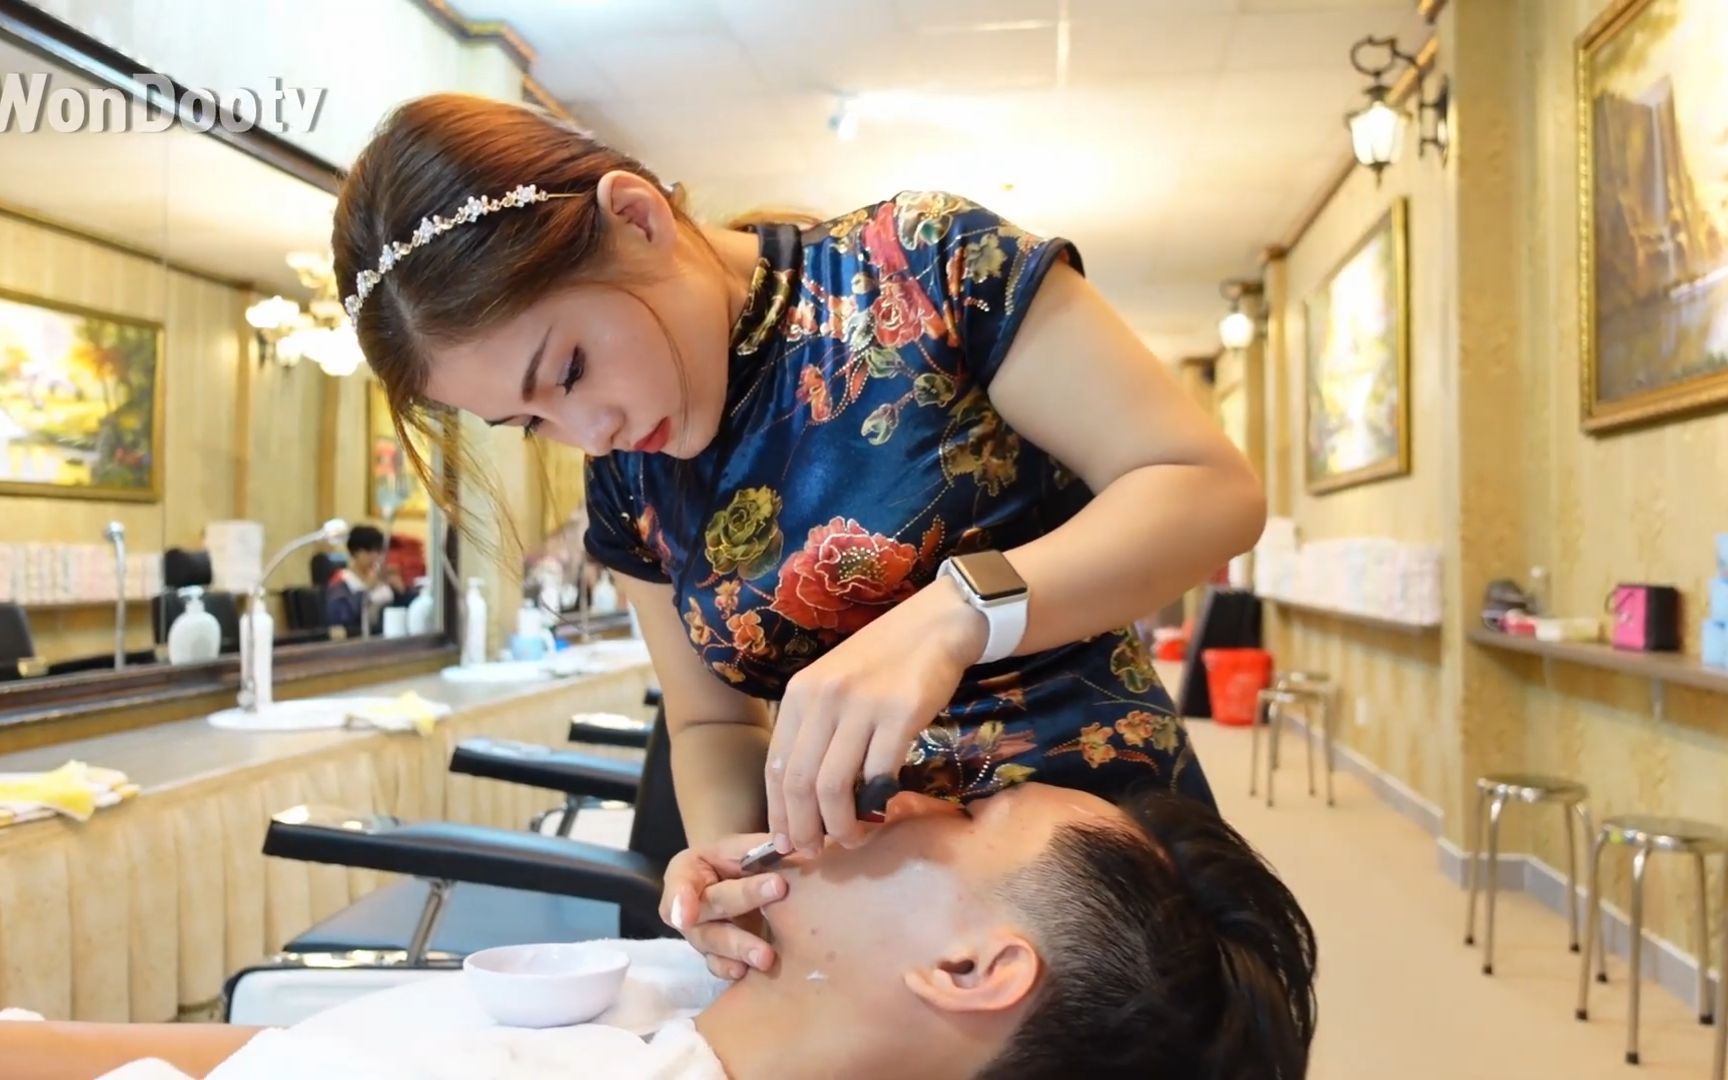 越南理发馆越南按摩理发师的日常生活脸部按摩越南按摩理发店剃须按摩